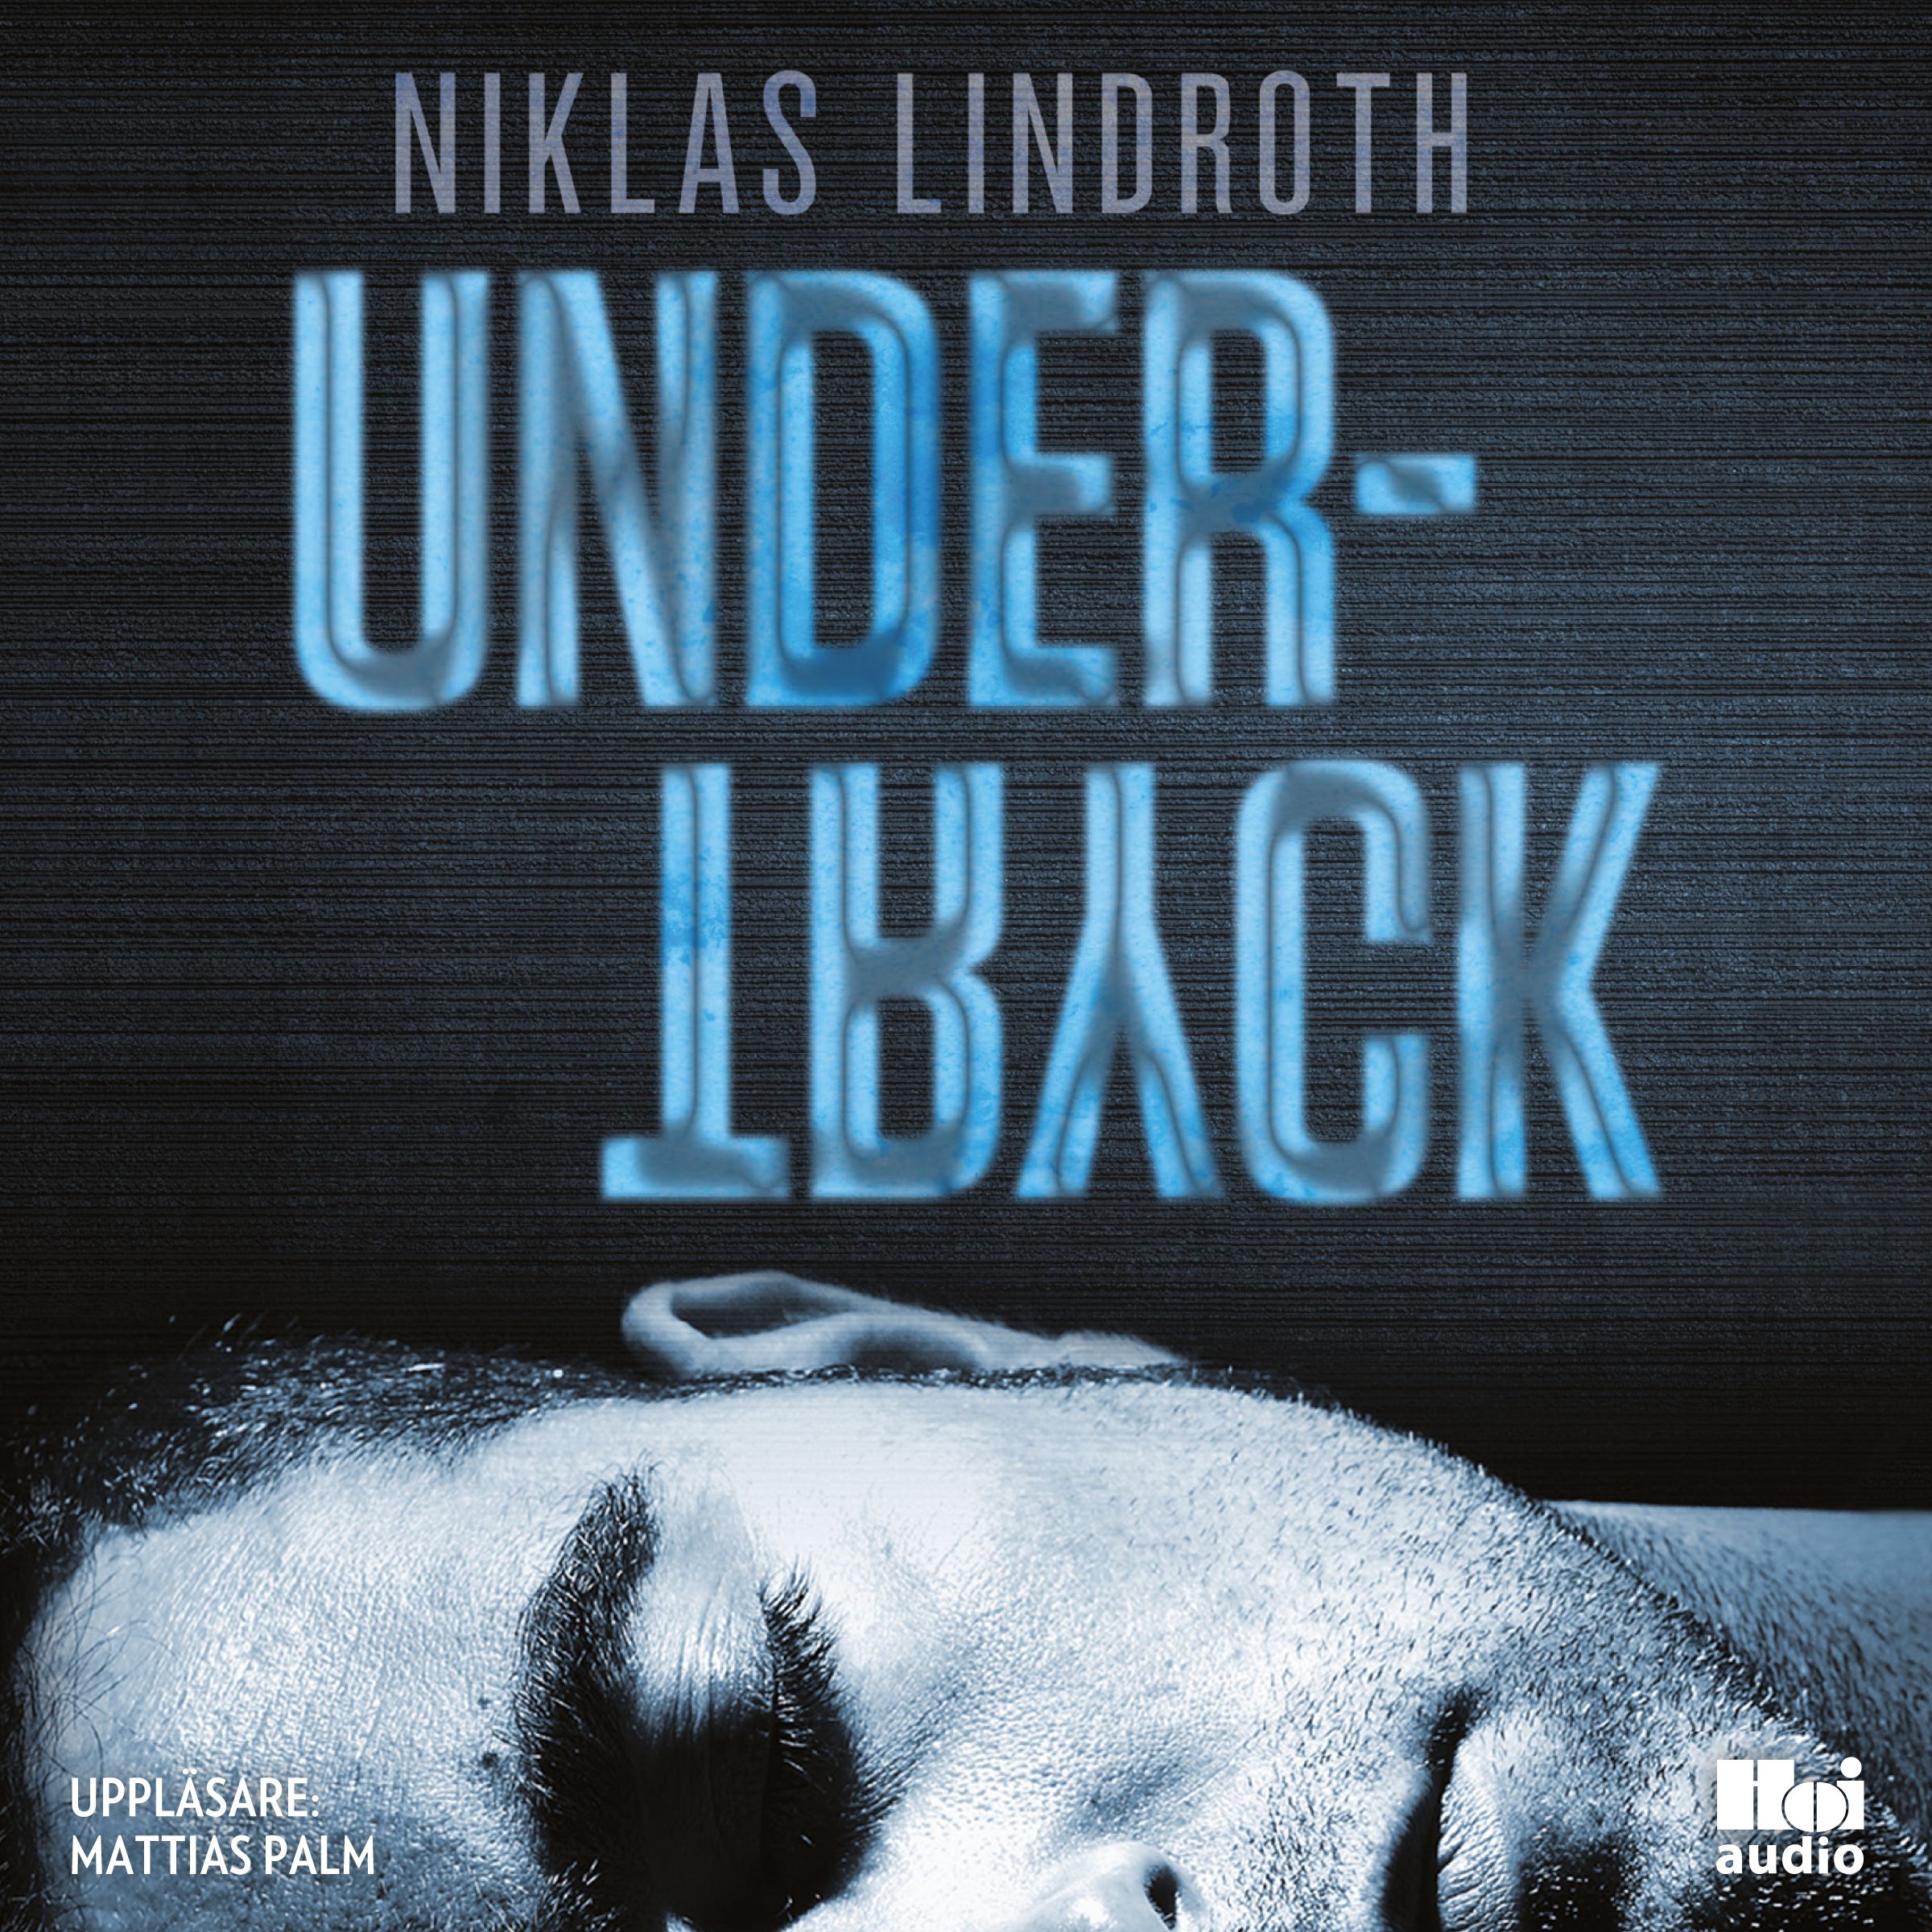 Undertryck, lydbog af Niklas Lindroth